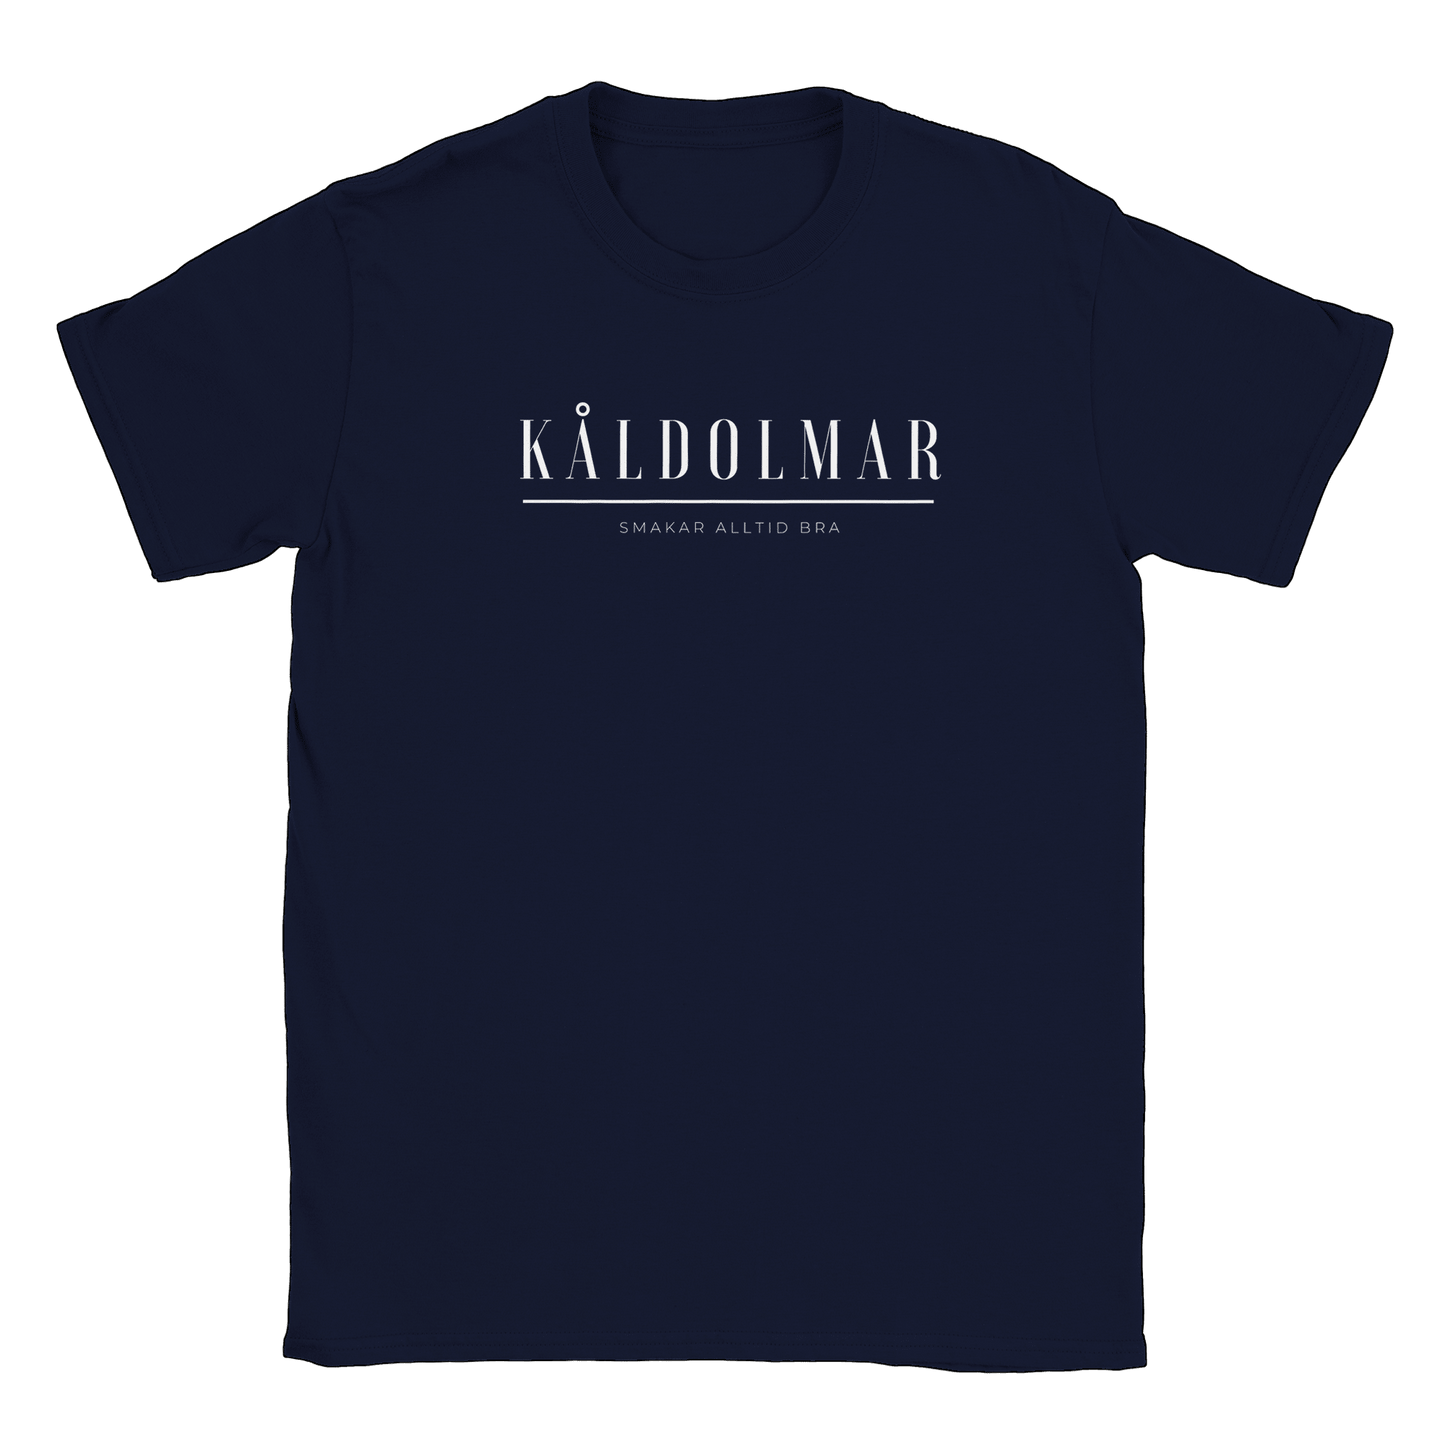 Kåldolmar - T-shirt Navy